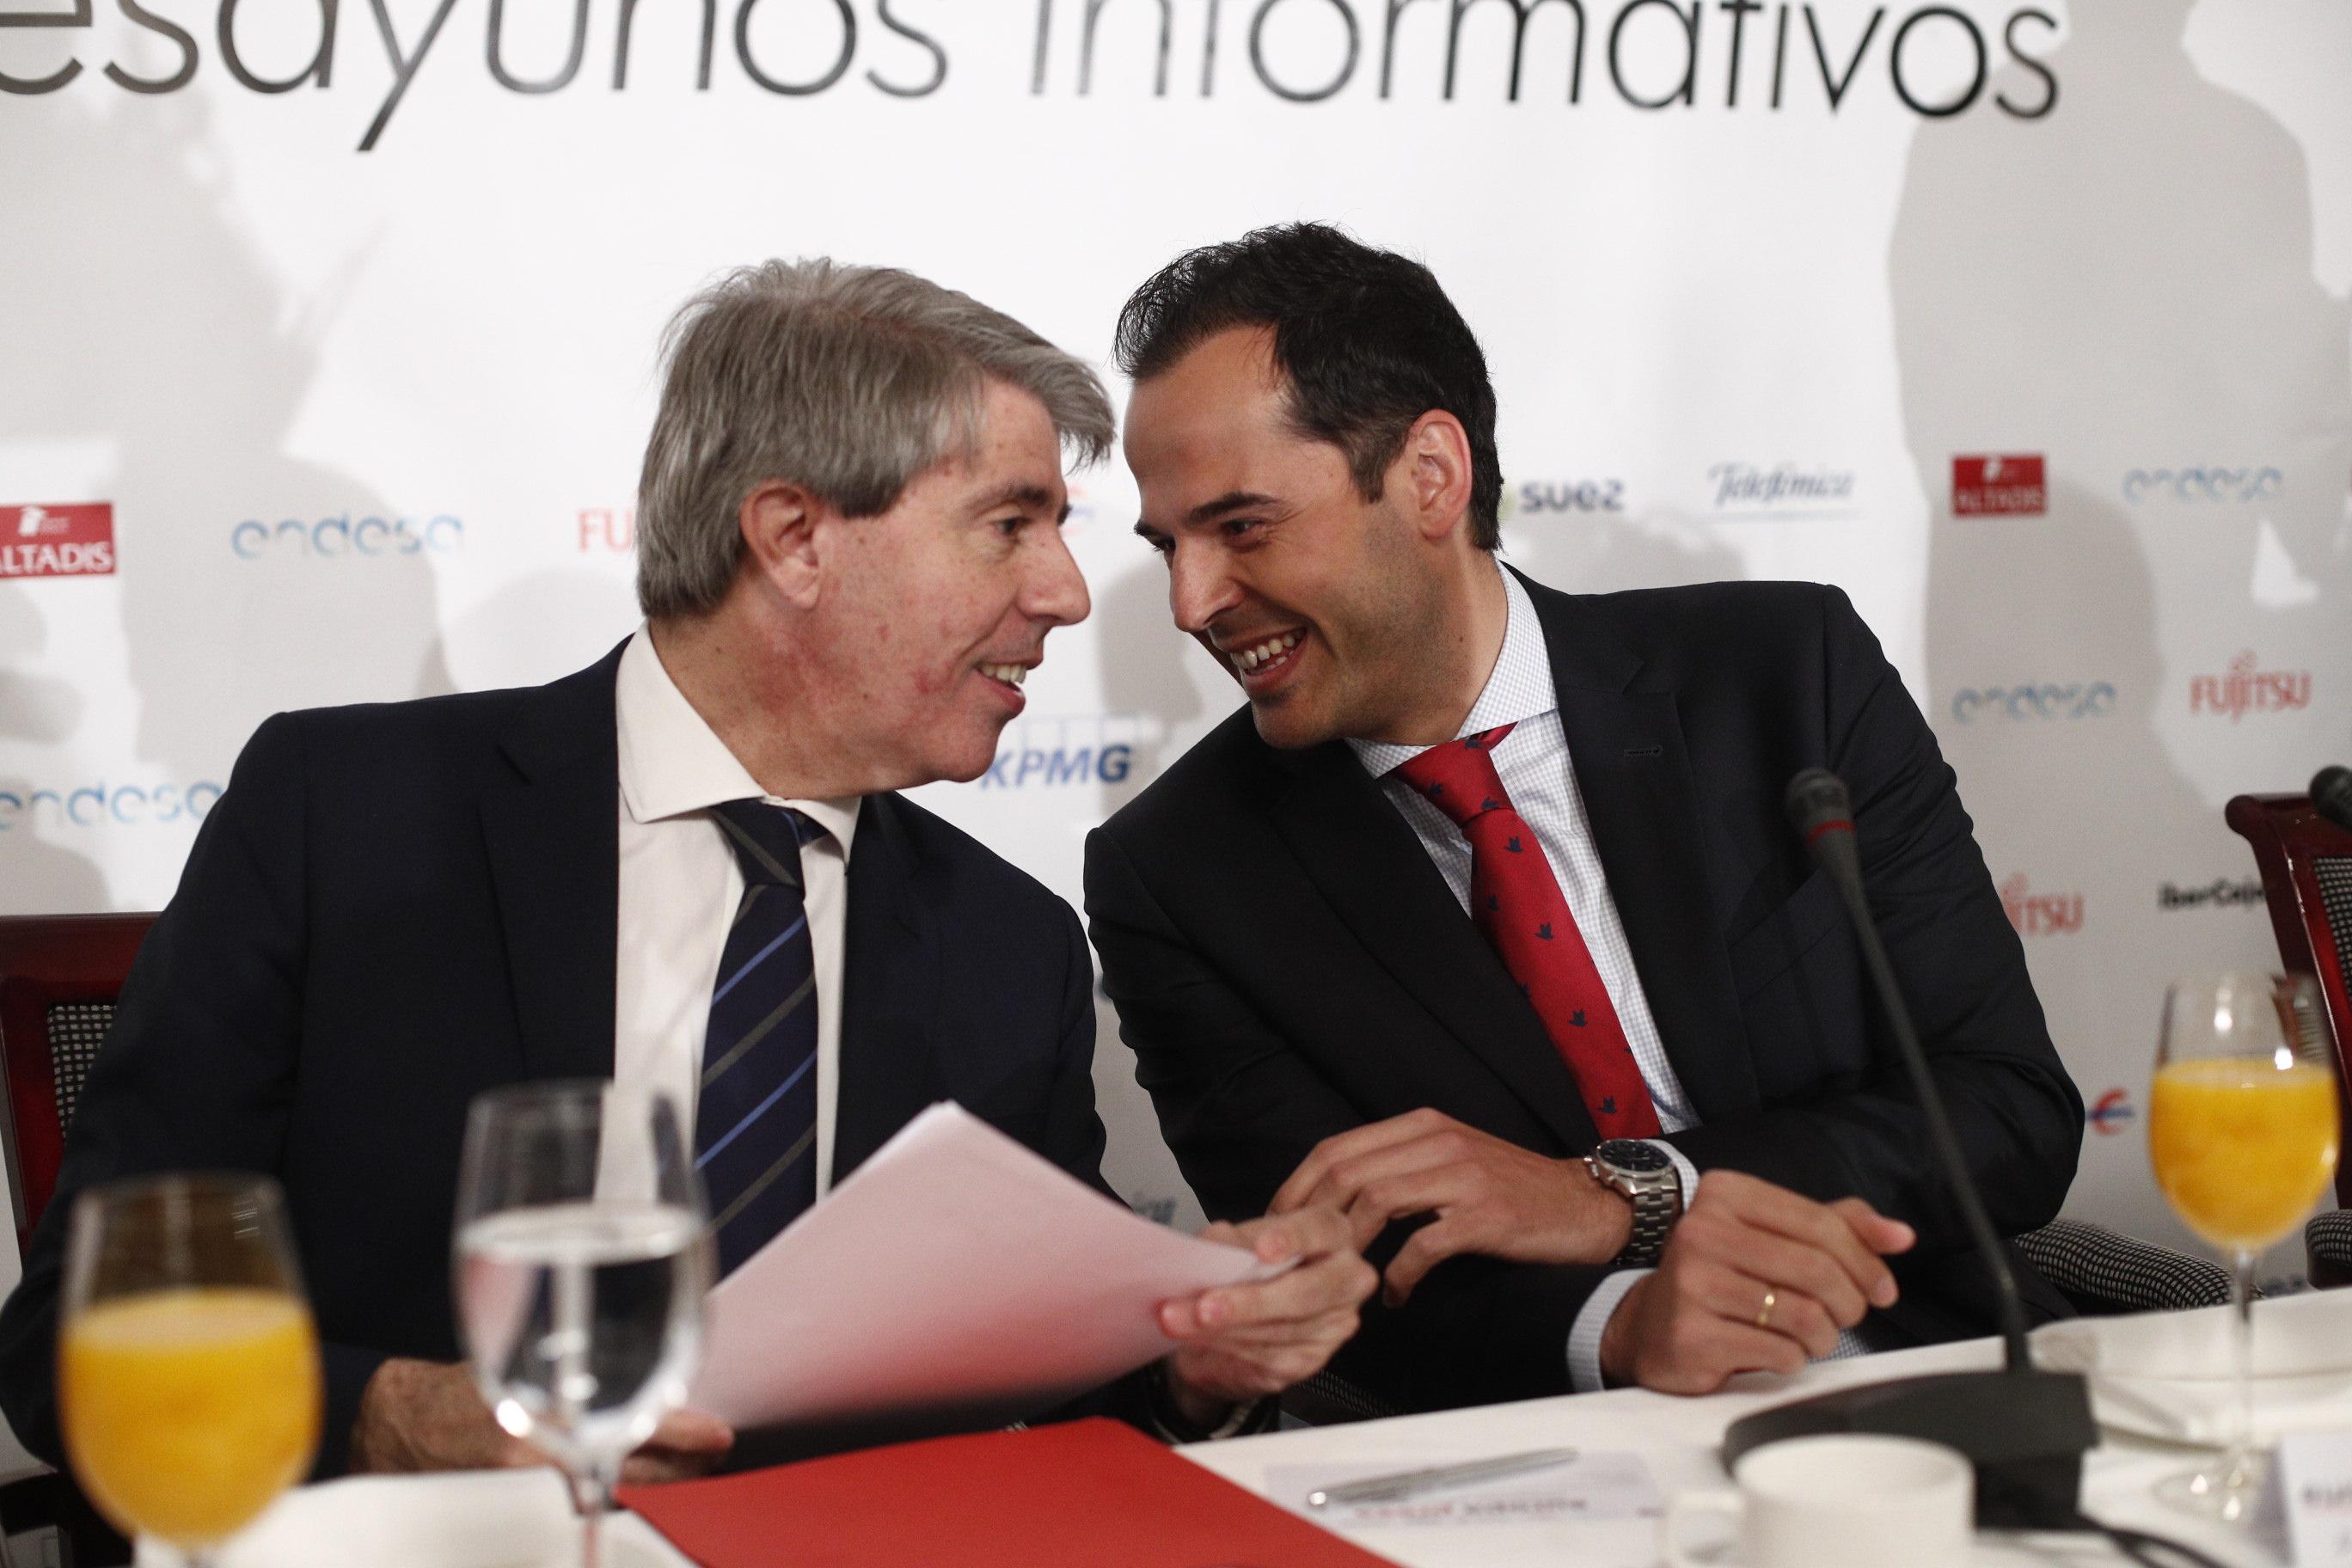 El candidato de Cs a la Asamblea de Madrid Ángel Garrido (izquierda) y el candidato de Cs a la Presidencia de la Comunidad de Madrid Ignacio Aguado (derecha) posan antes de participar